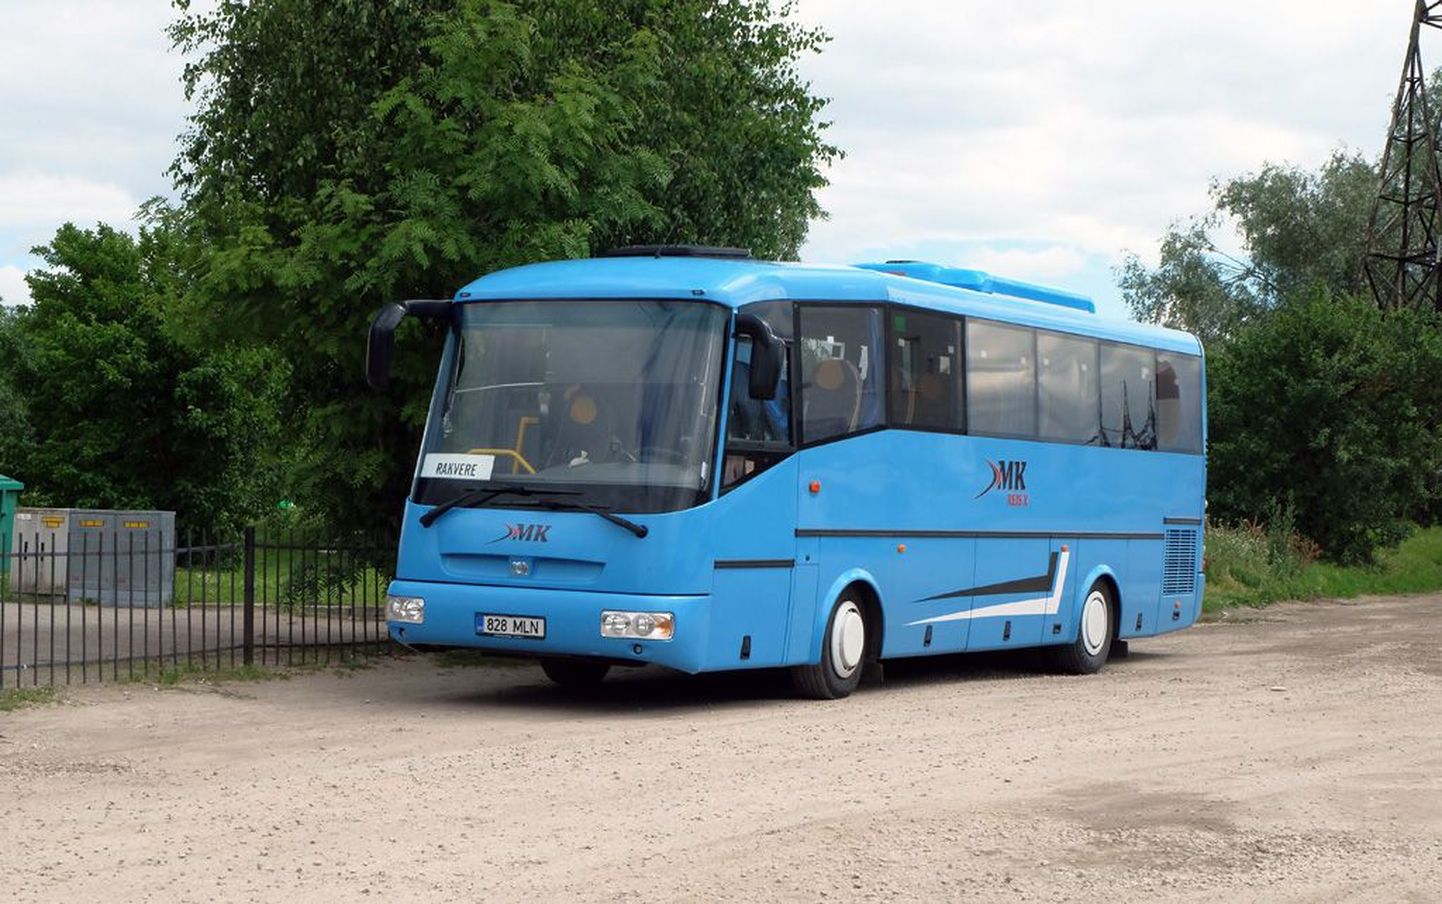 Pildil olev buss kuulub küll ettevõttele M.K.Reis-X, kuid konkreetsel bussil ei pruugi juhtumiga seotust olla.